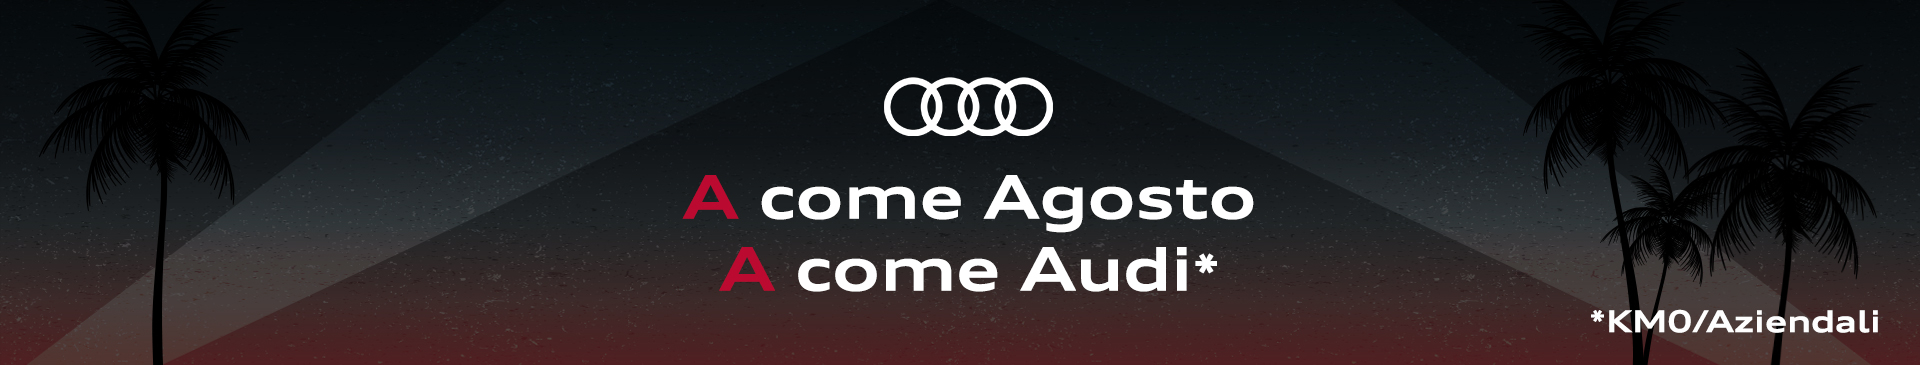 Agosto: promo Audi km0 e aziendali